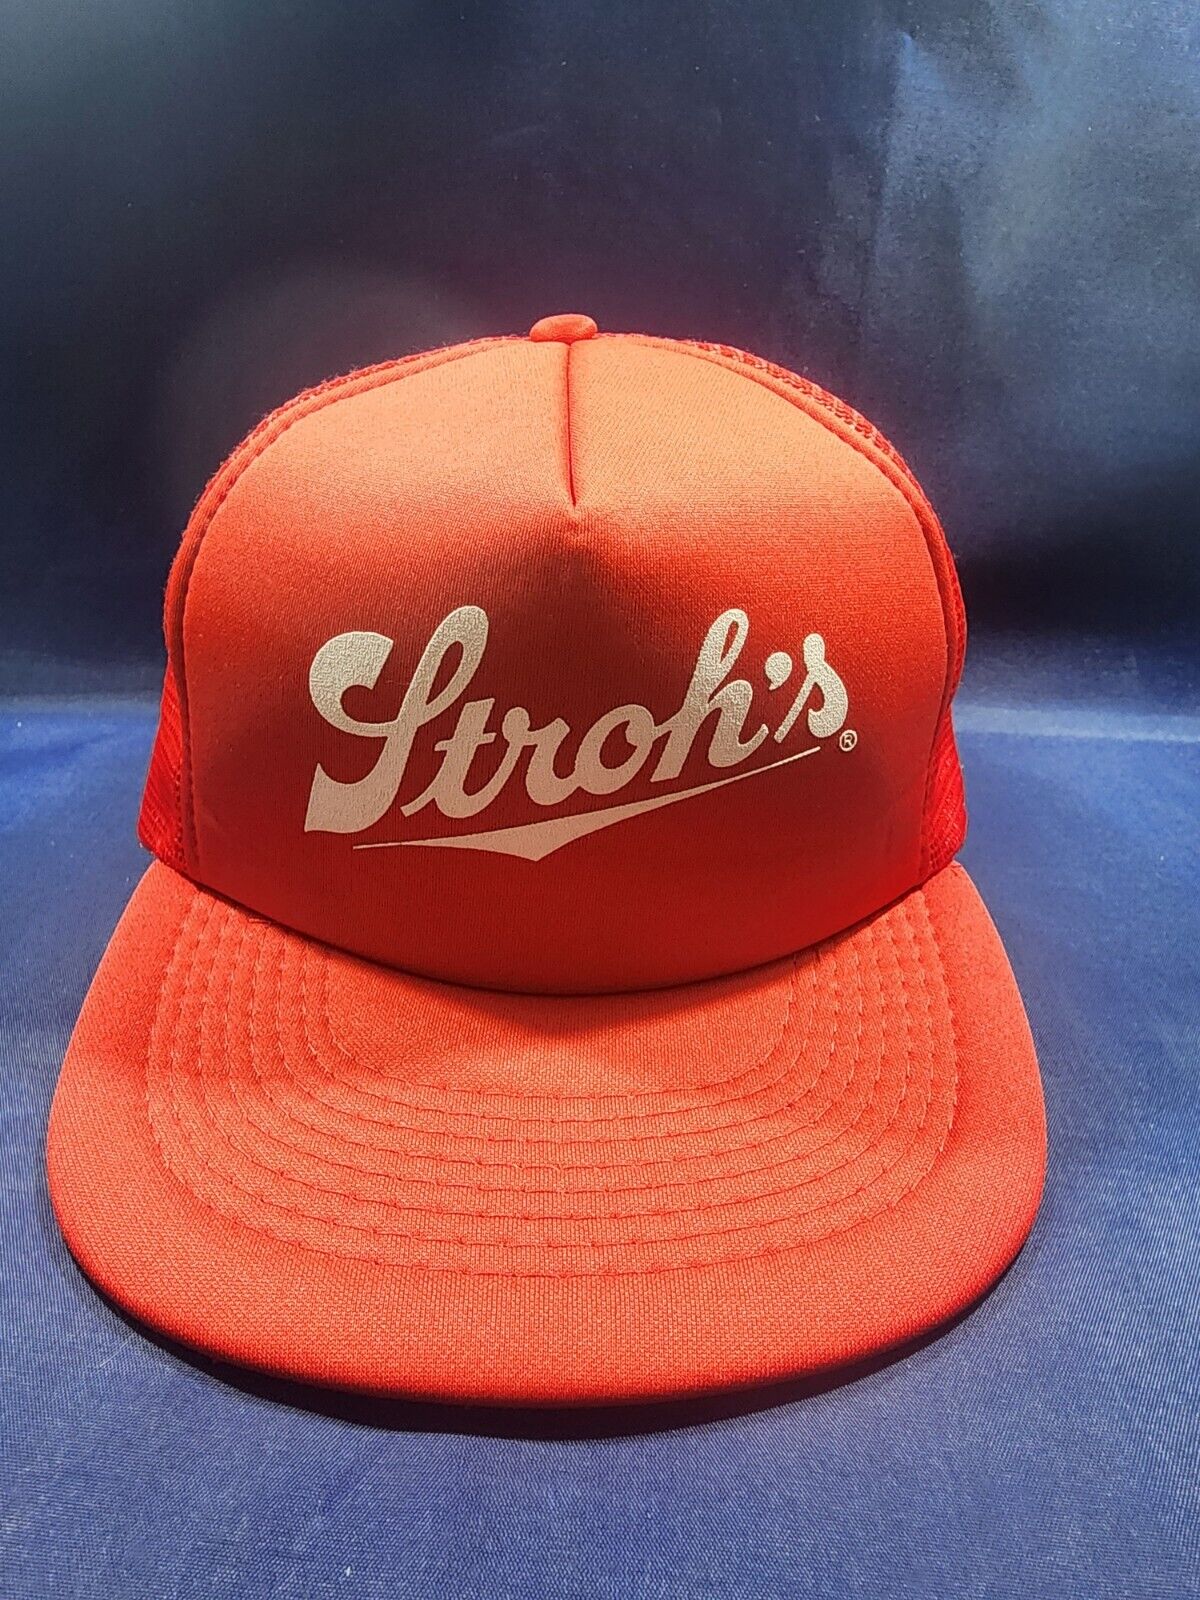 Vintage Stroh's Beer Designer Pro Hat Red Trucker Mesh Cap Snapback Cap